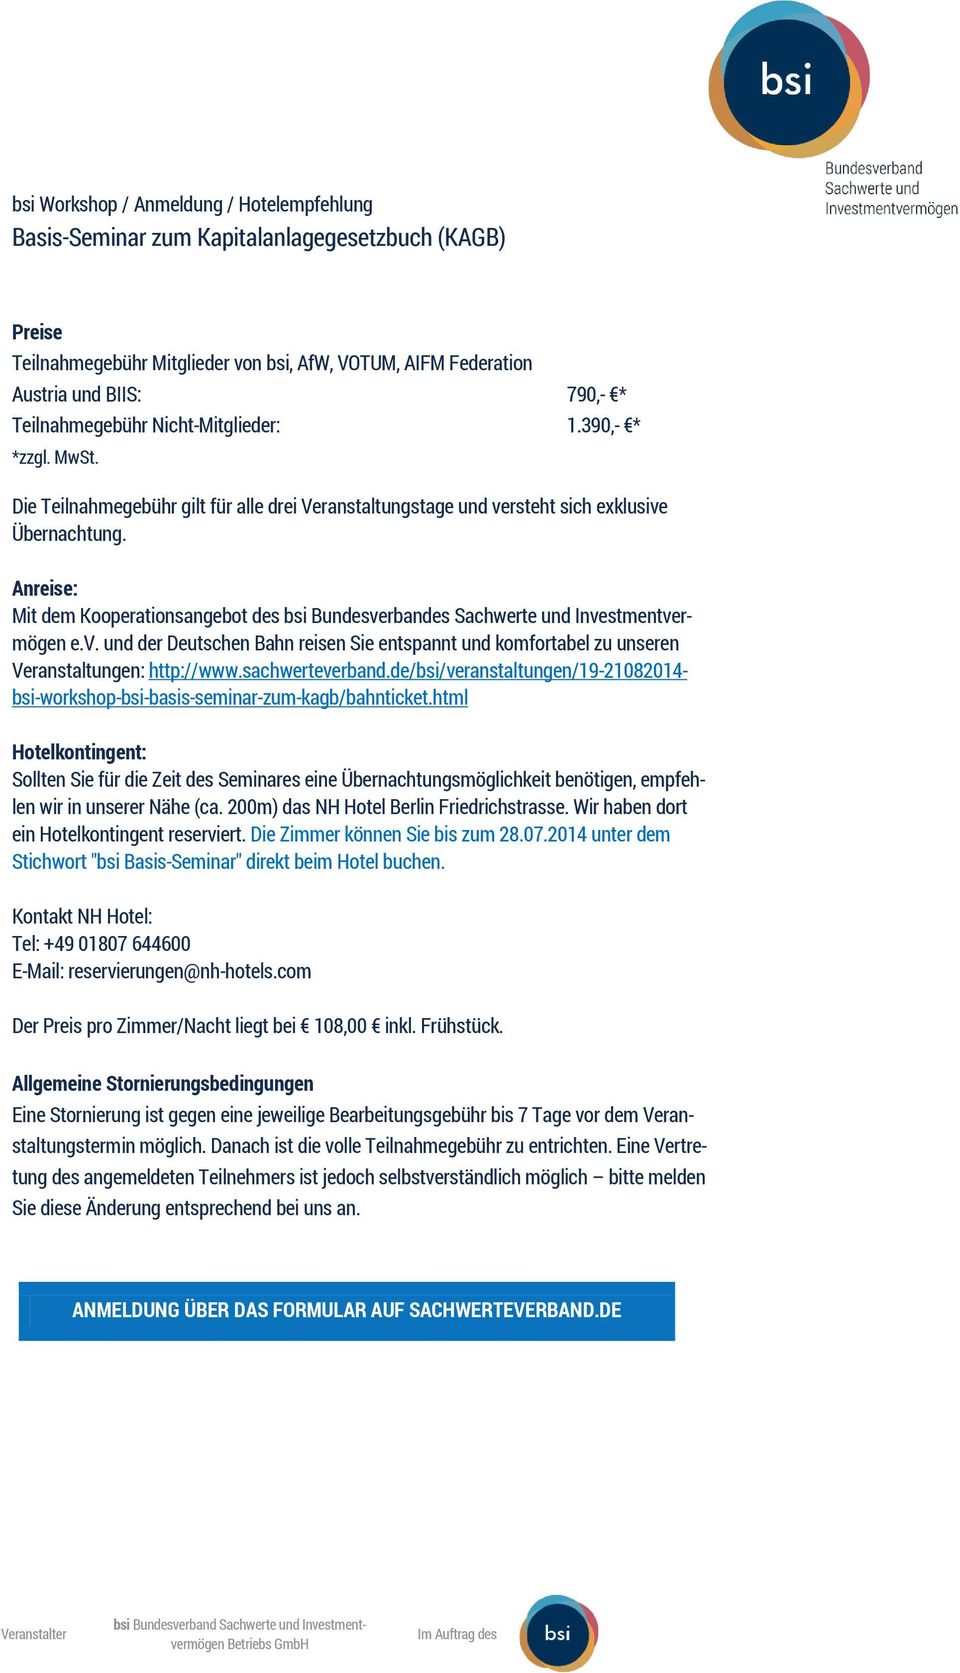 sachwerteverband.de/bsi/veranstaltungen/19-21082014- bsi-workshop-bsi-basis-seminar-zum-kagb/bahnticket.